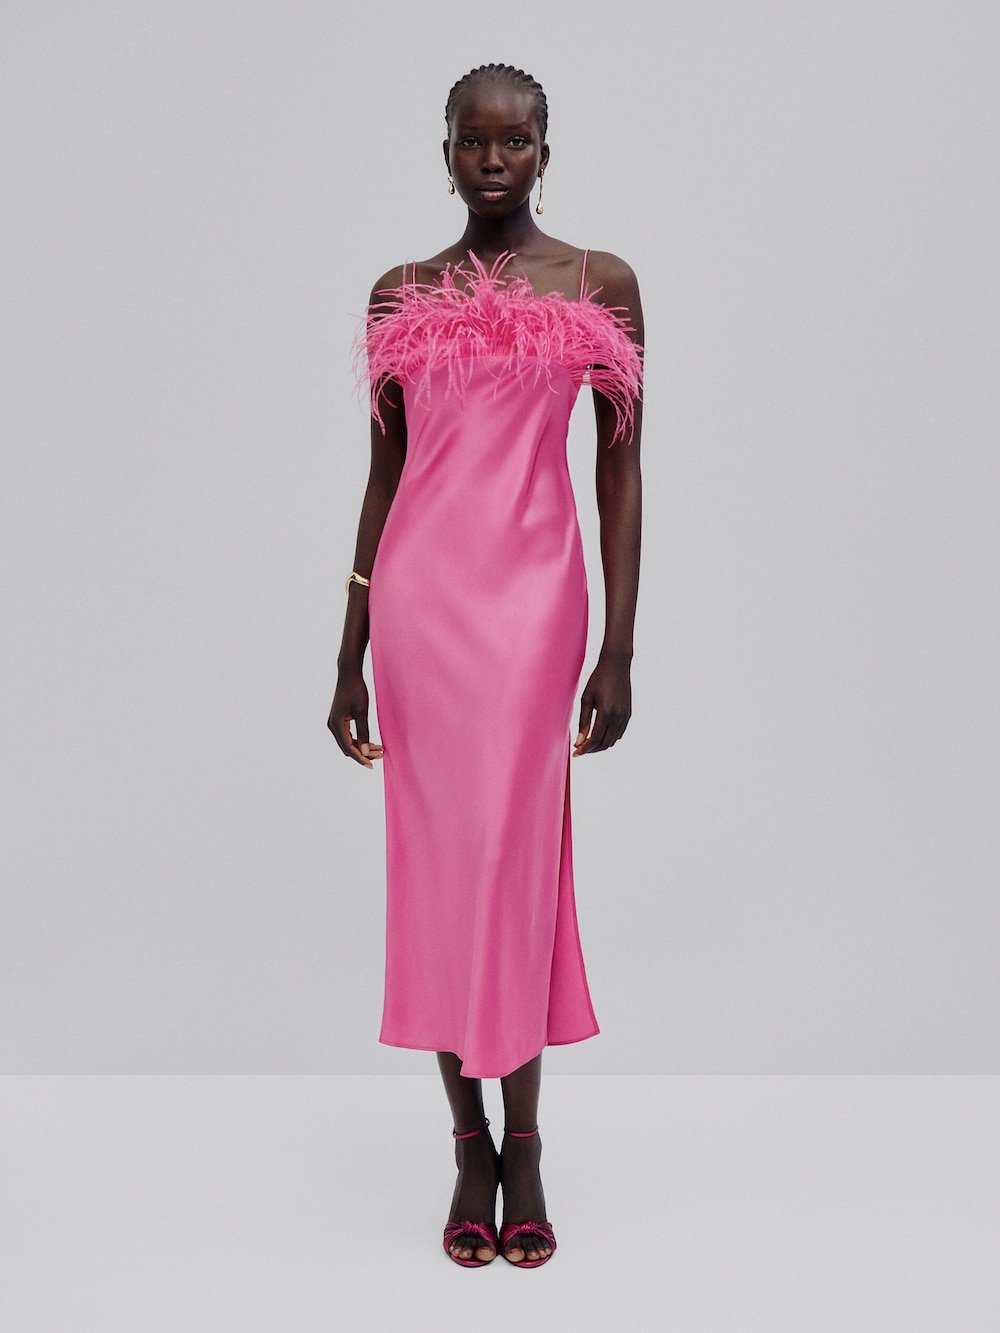 Massimo Dutti Pink Feather dress.jpg